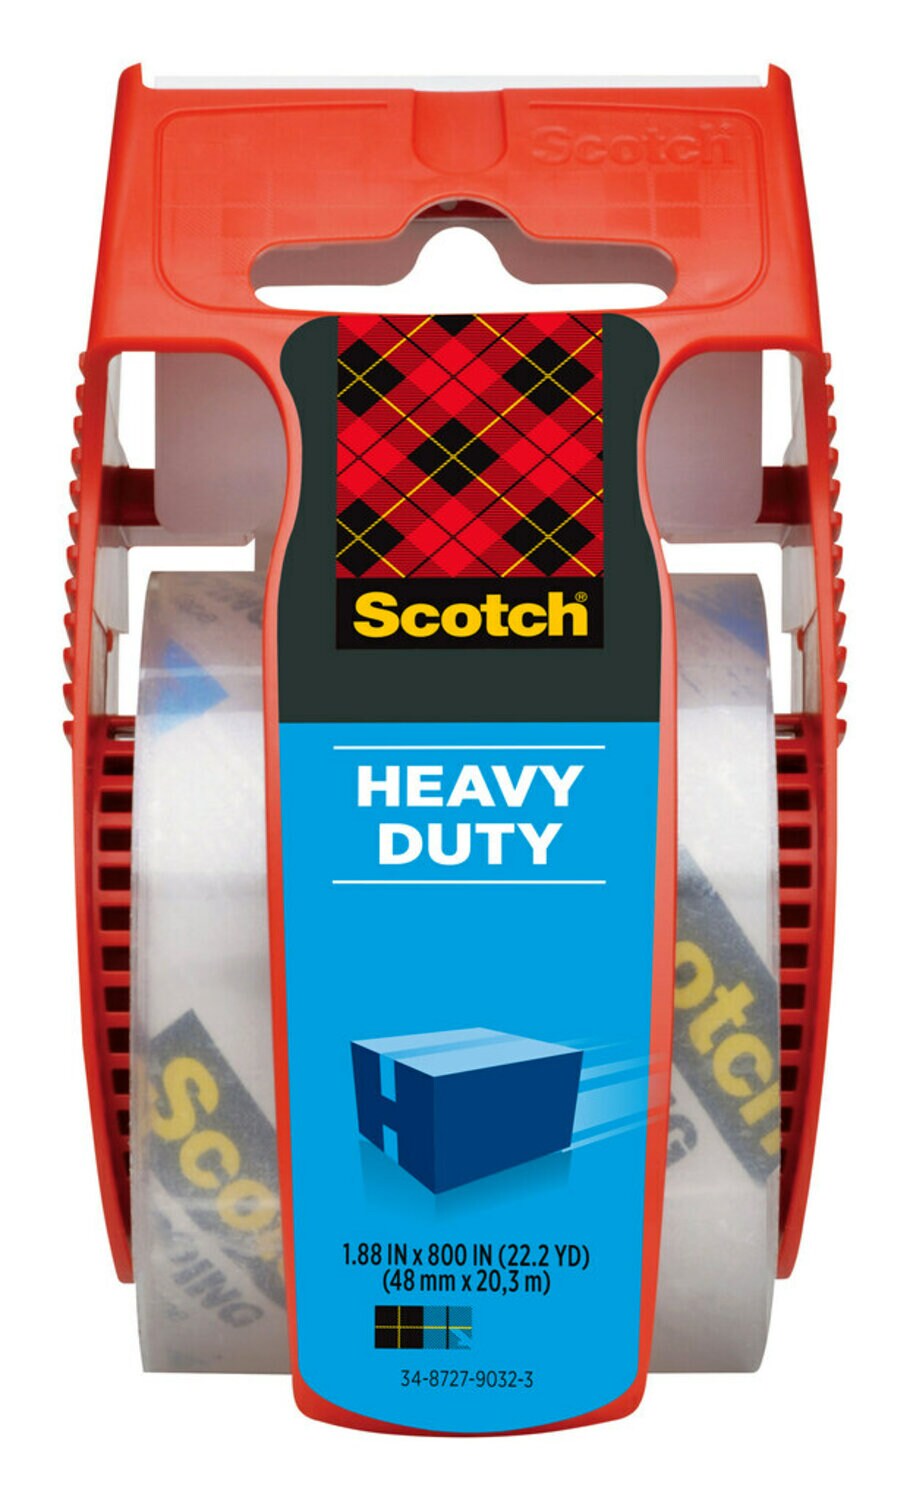 7100155399 - Scotch Heavy Duty Shipping Packaging Tape 142, 1.88 in x 800 in